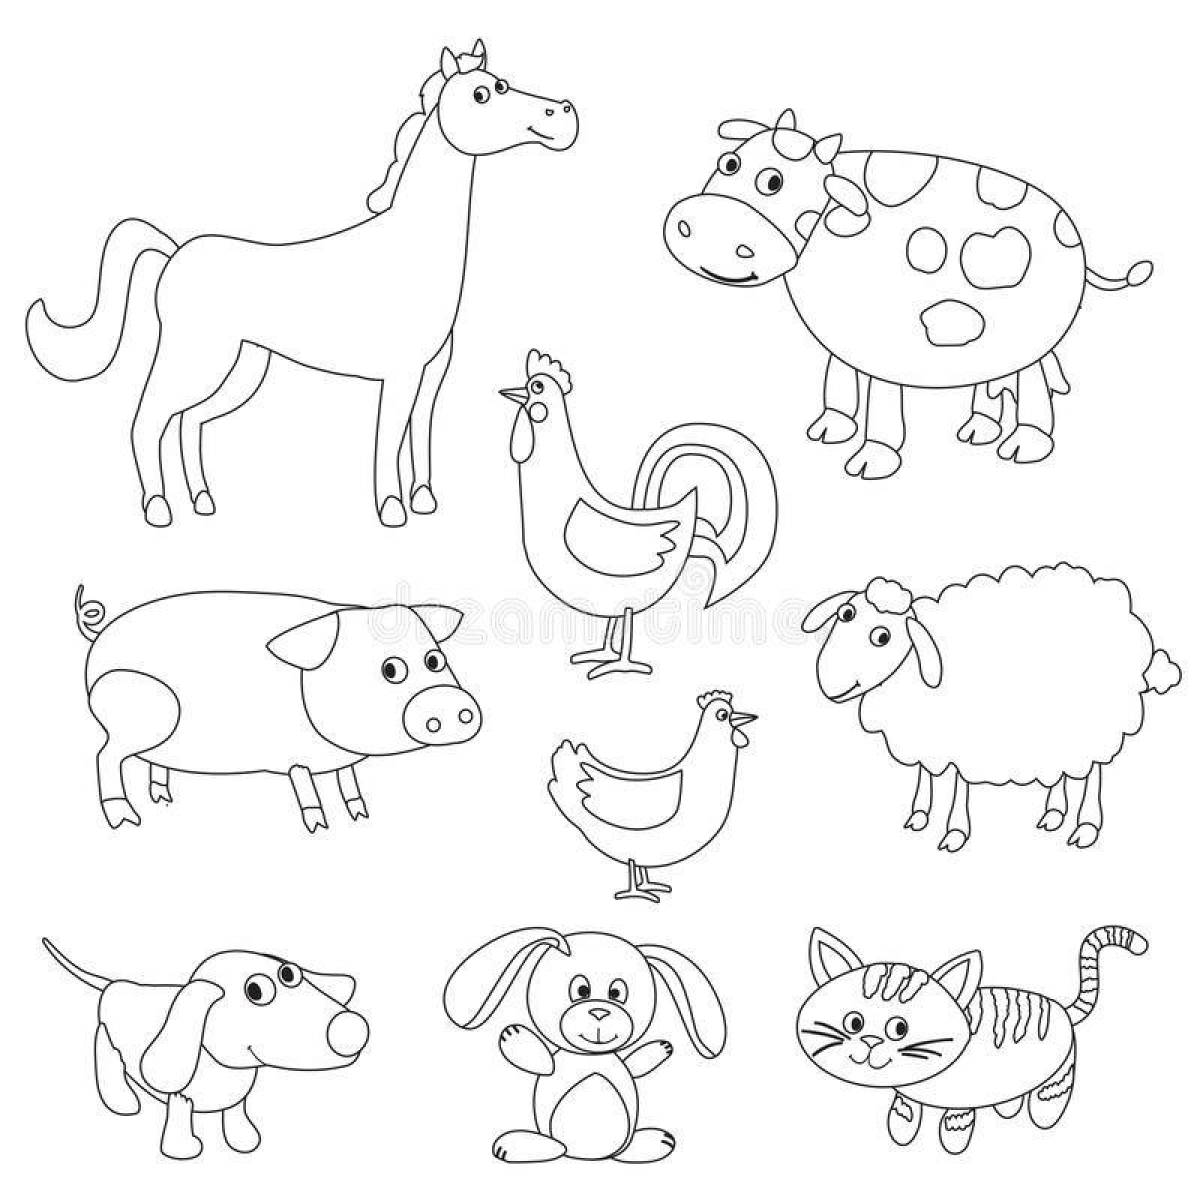 Очаровательная раскраска домашних животных для детей 4-5 лет